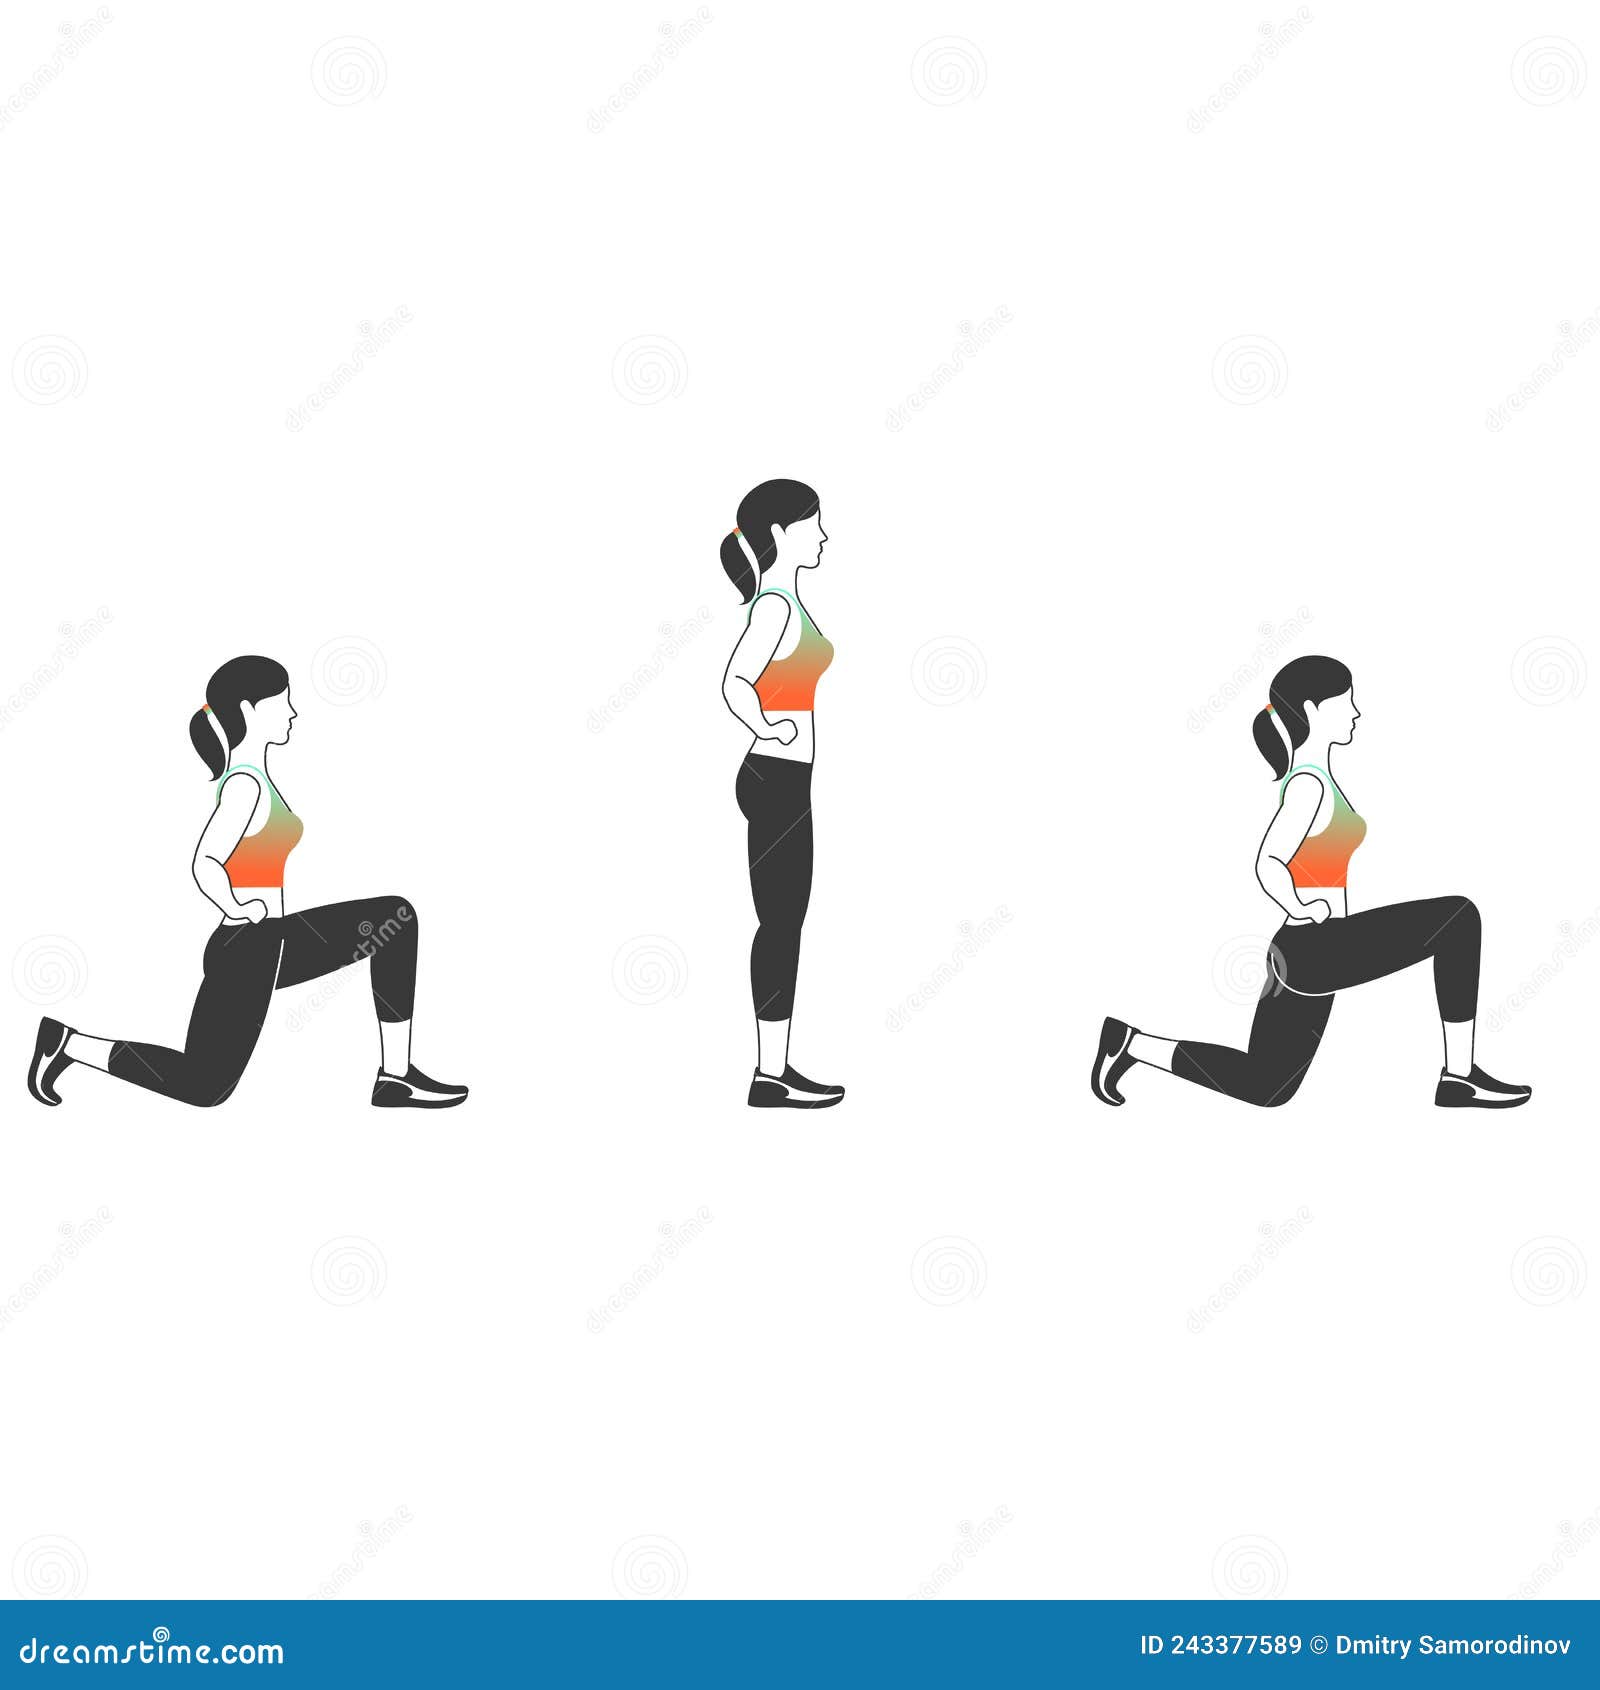 Vetor de Back workout set on white background. Exercises for women